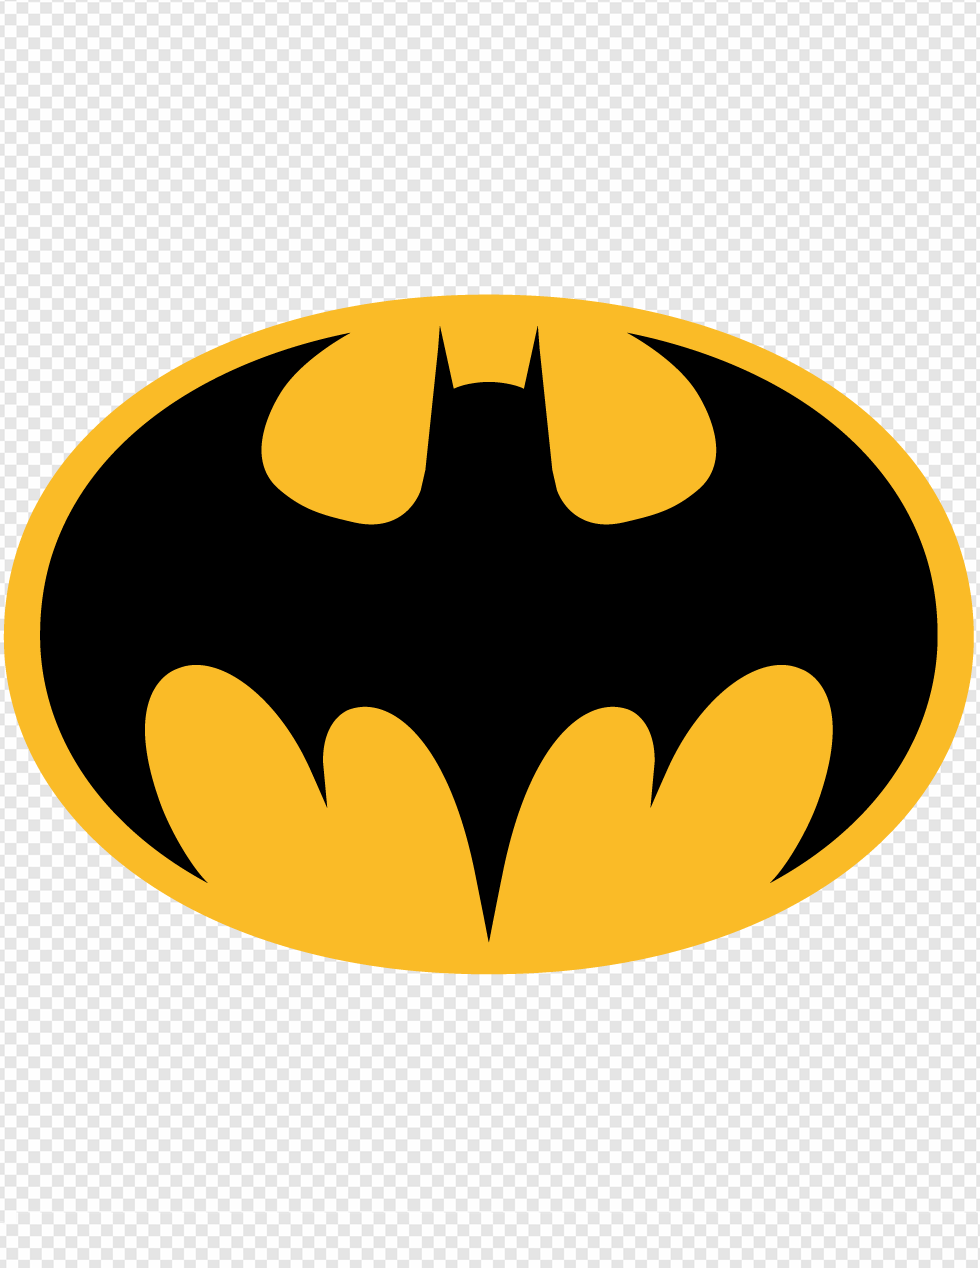 Batman Vector - Logoshare Png Image Batman Vector Png,Batman Logo Vector -  free transparent png images - pngaaa.com